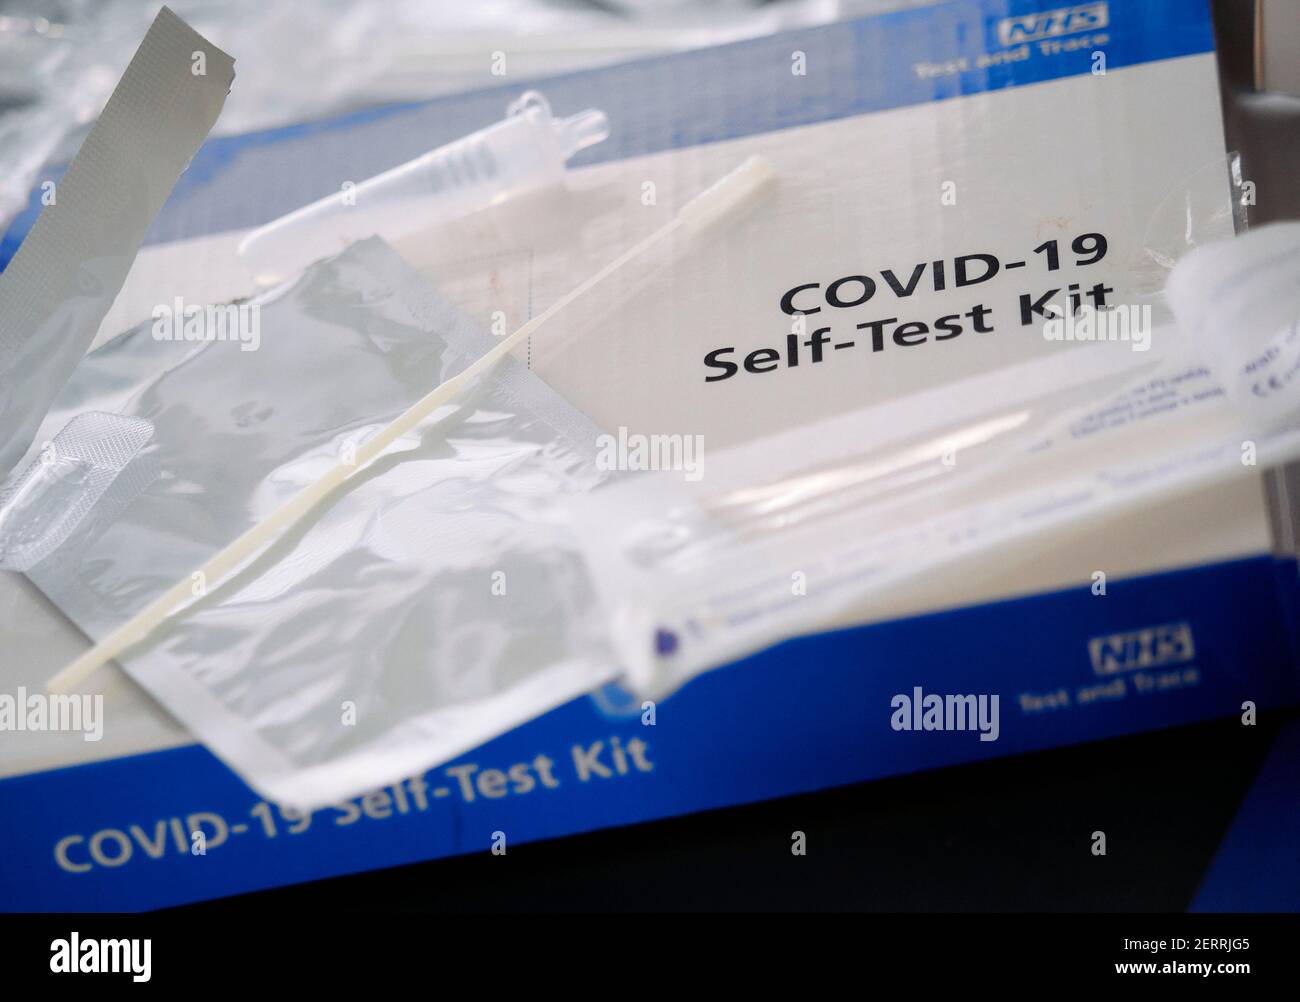 Londra, Inghilterra - 28 febbraio 2021: NHS Test and Trace Covid-19 Home Test Kit per Coronavirus utilizzando tamponi rilasciati dal governo britannico Foto Stock